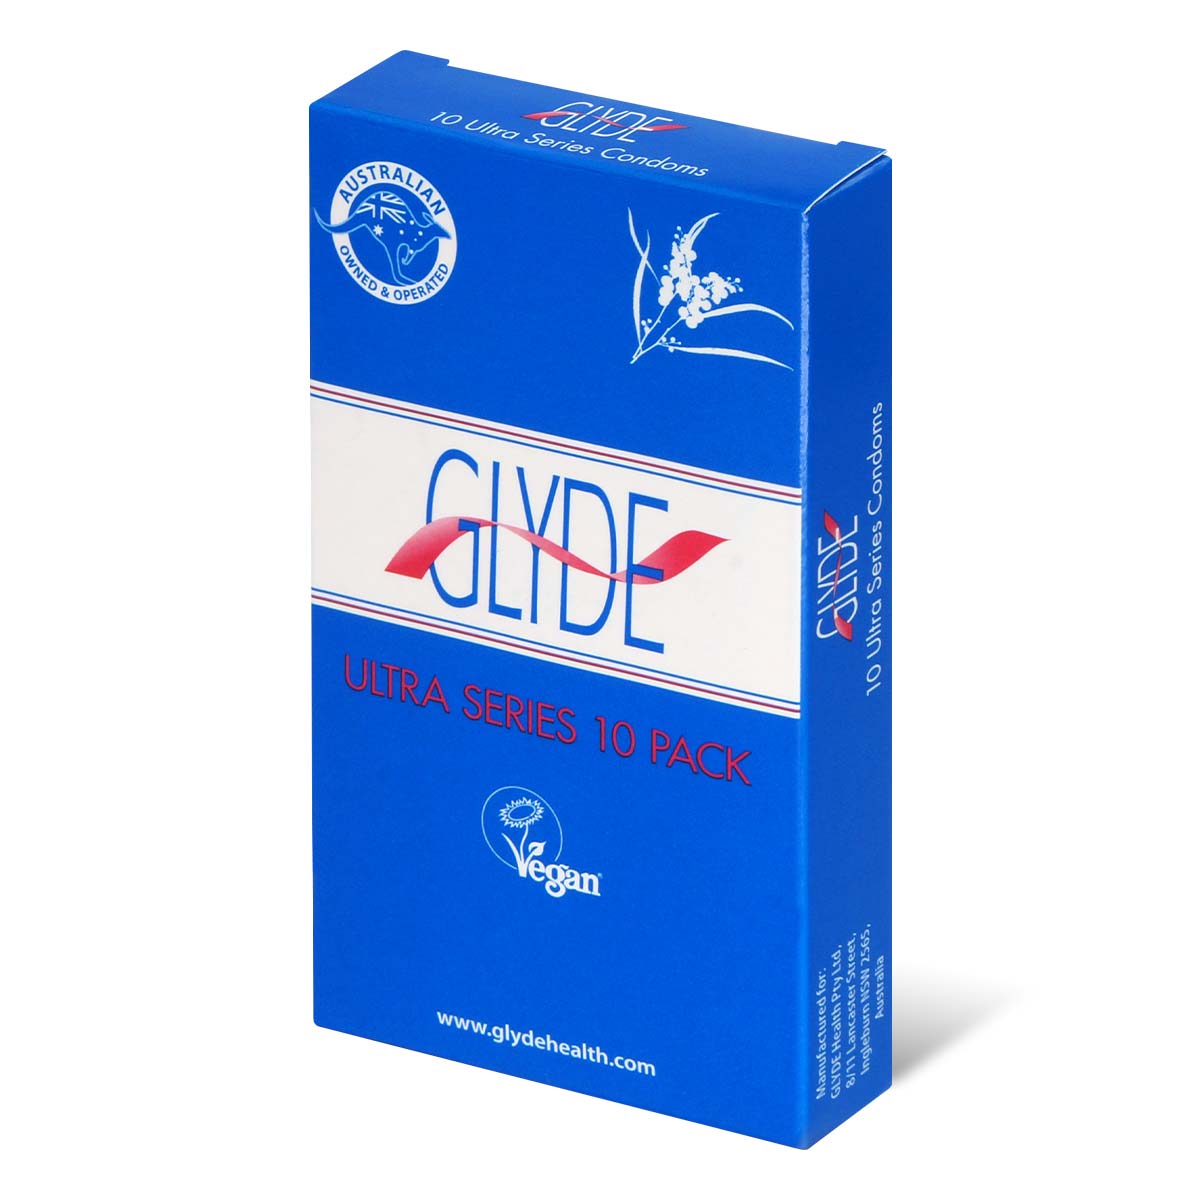 Glyde 格蕾迪 素食主义安全套 超薄 10 片装 乳胶安全套-p_1